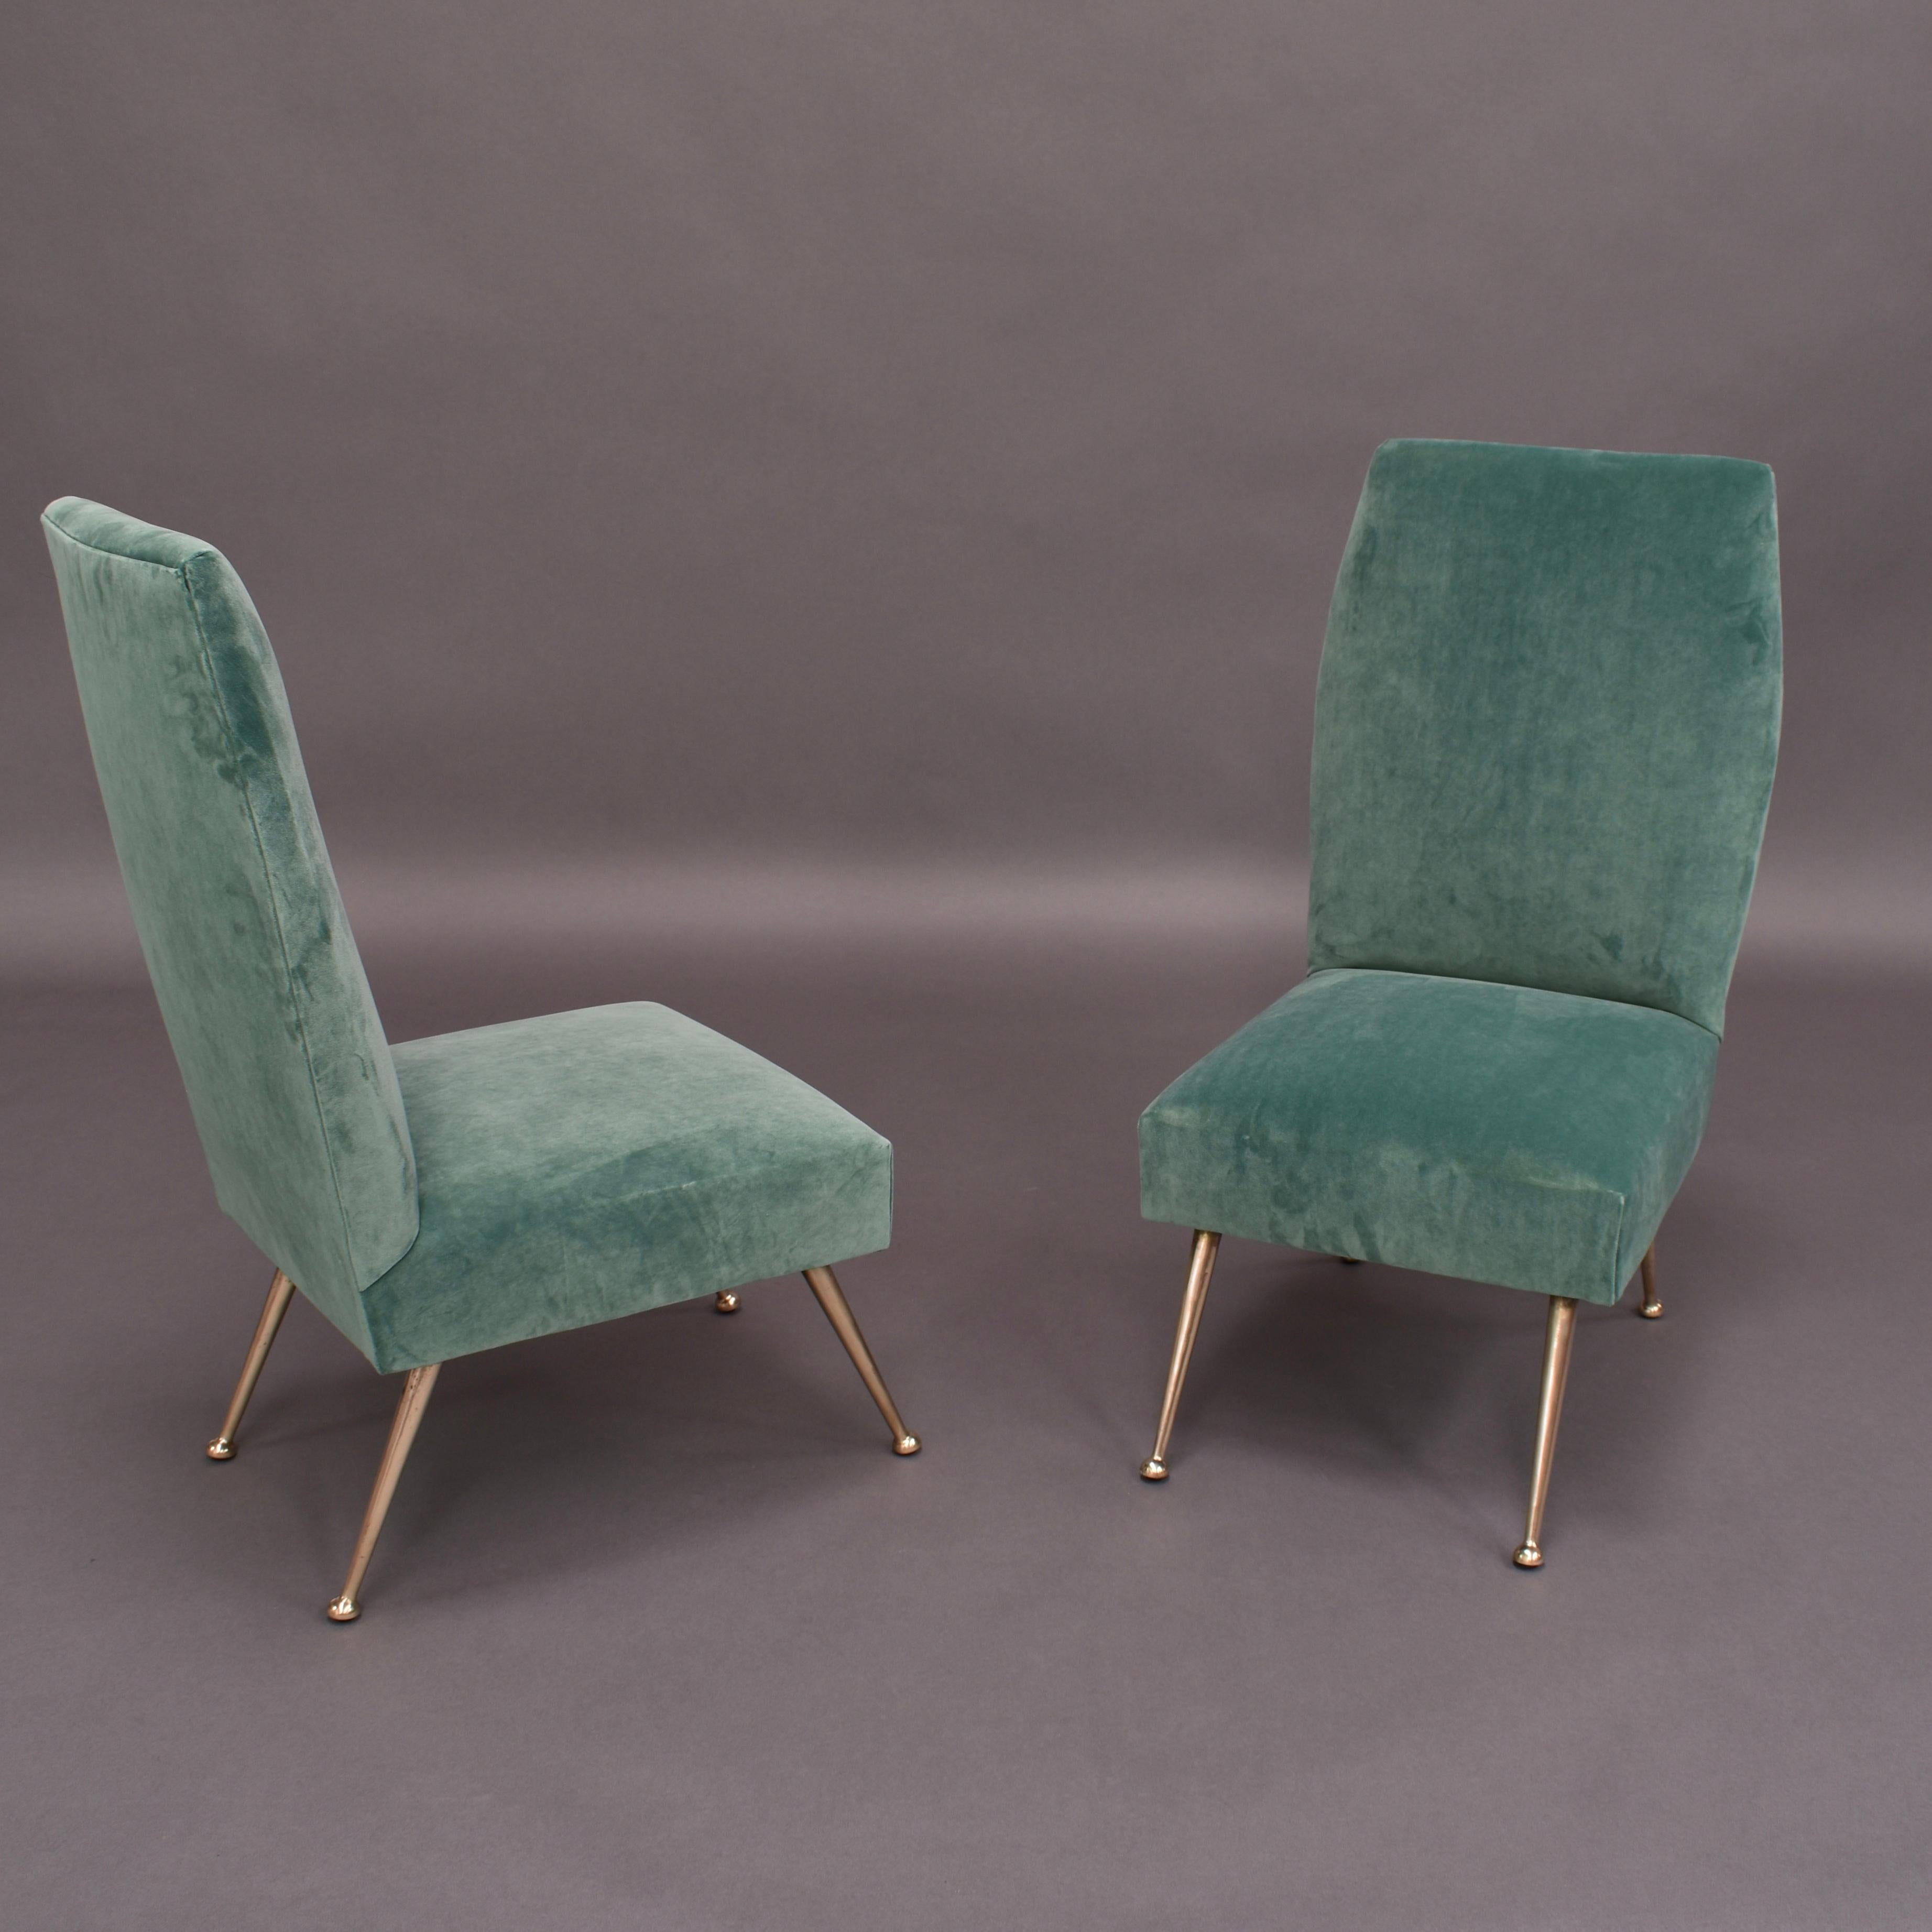 Erstaunlich elegantes und trendiges Paar Beistellstühle von Gigi Radice für Minotti, Italien, 1950er Jahre.
Die Stühle wurden mit einem neuen Samtstoff von Chivasso (JAB) überzogen. Die Stühle wurden für die Marketingbilder von Chivasso für 2020